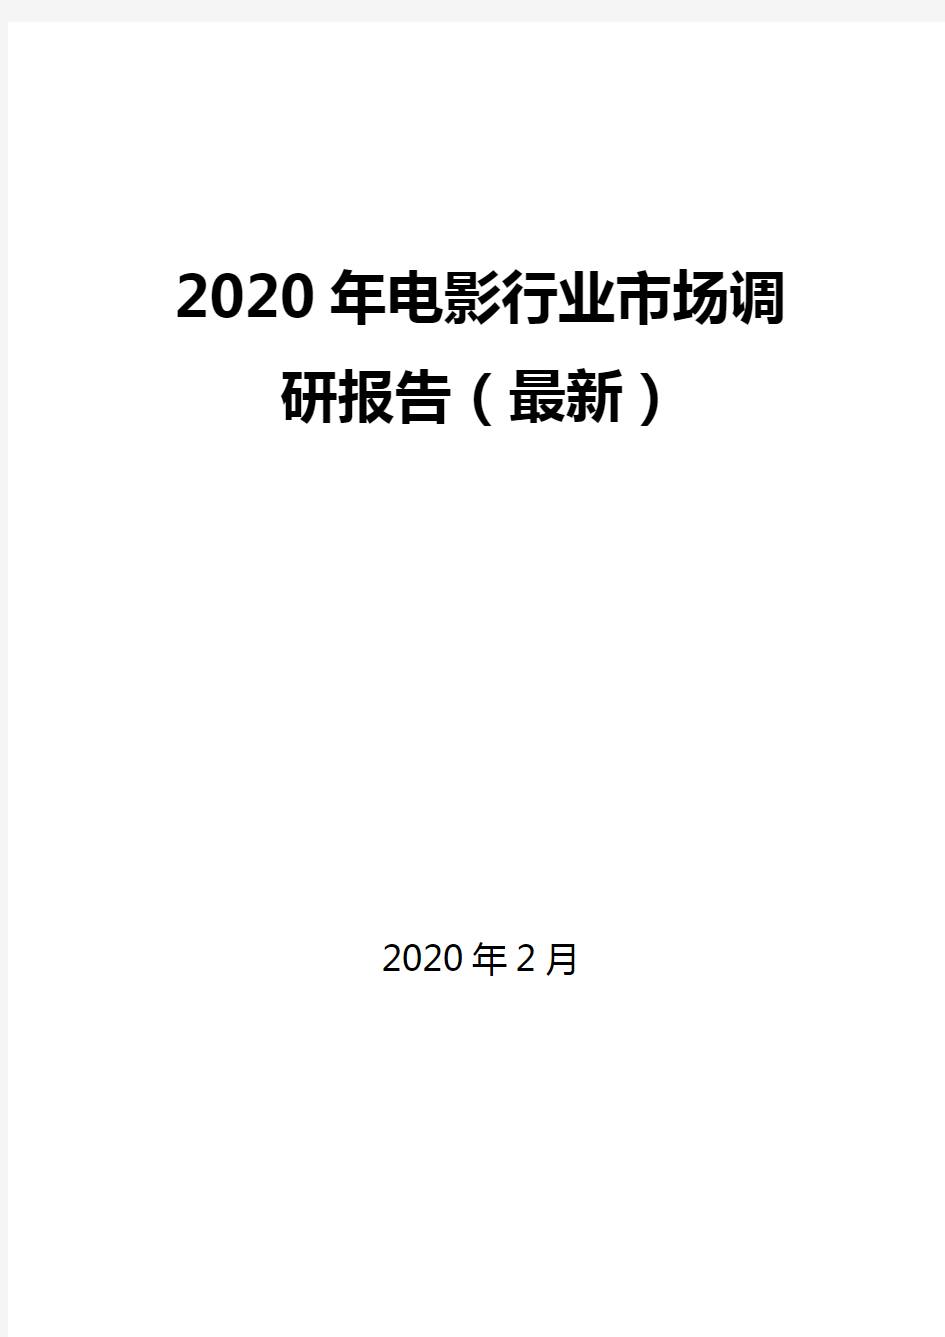 2020年电影行业市场调研报告(最新)